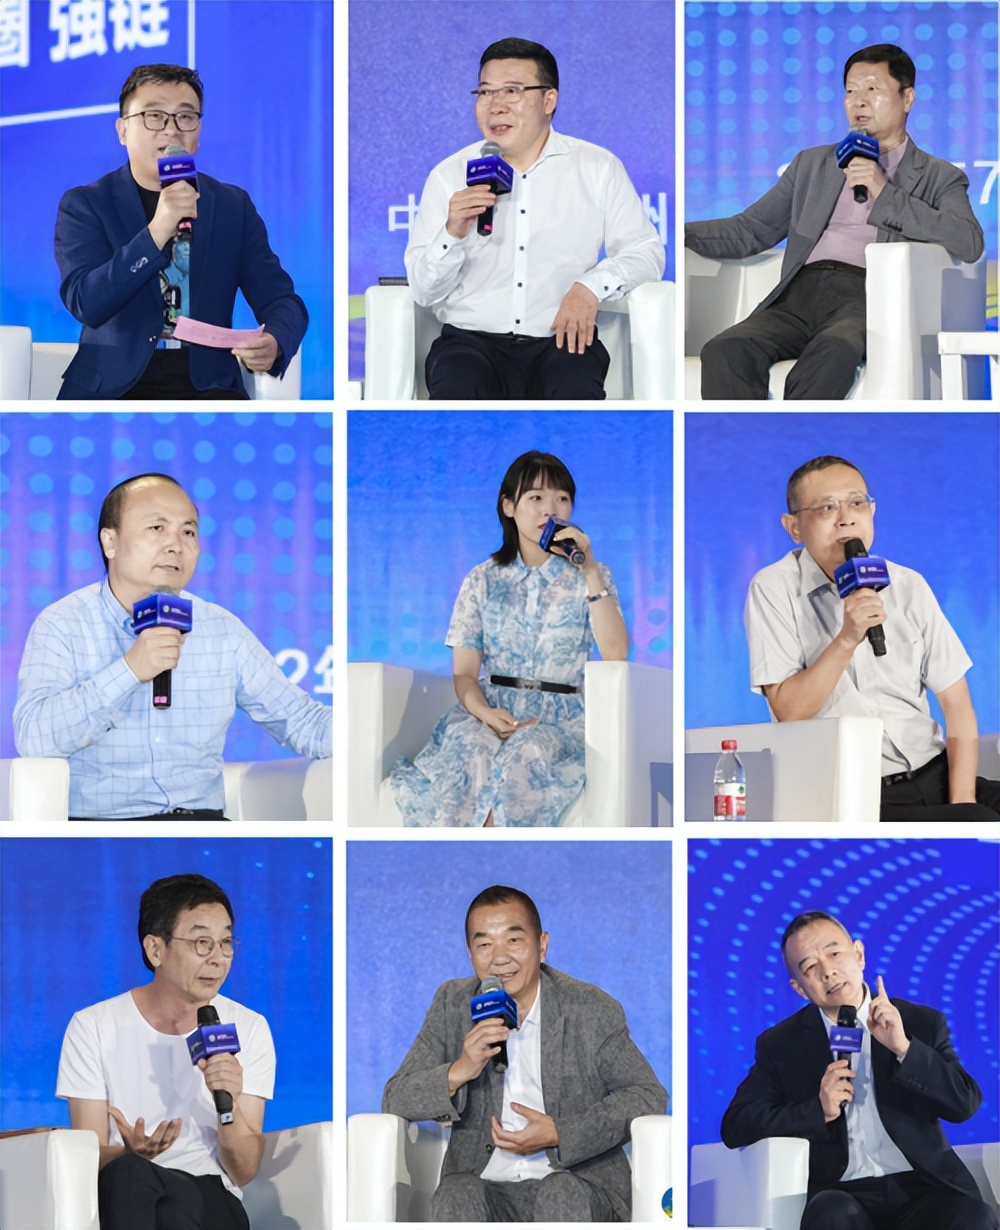 2022中国家居业领军企业家(夏季）年会在羊城盛大召开